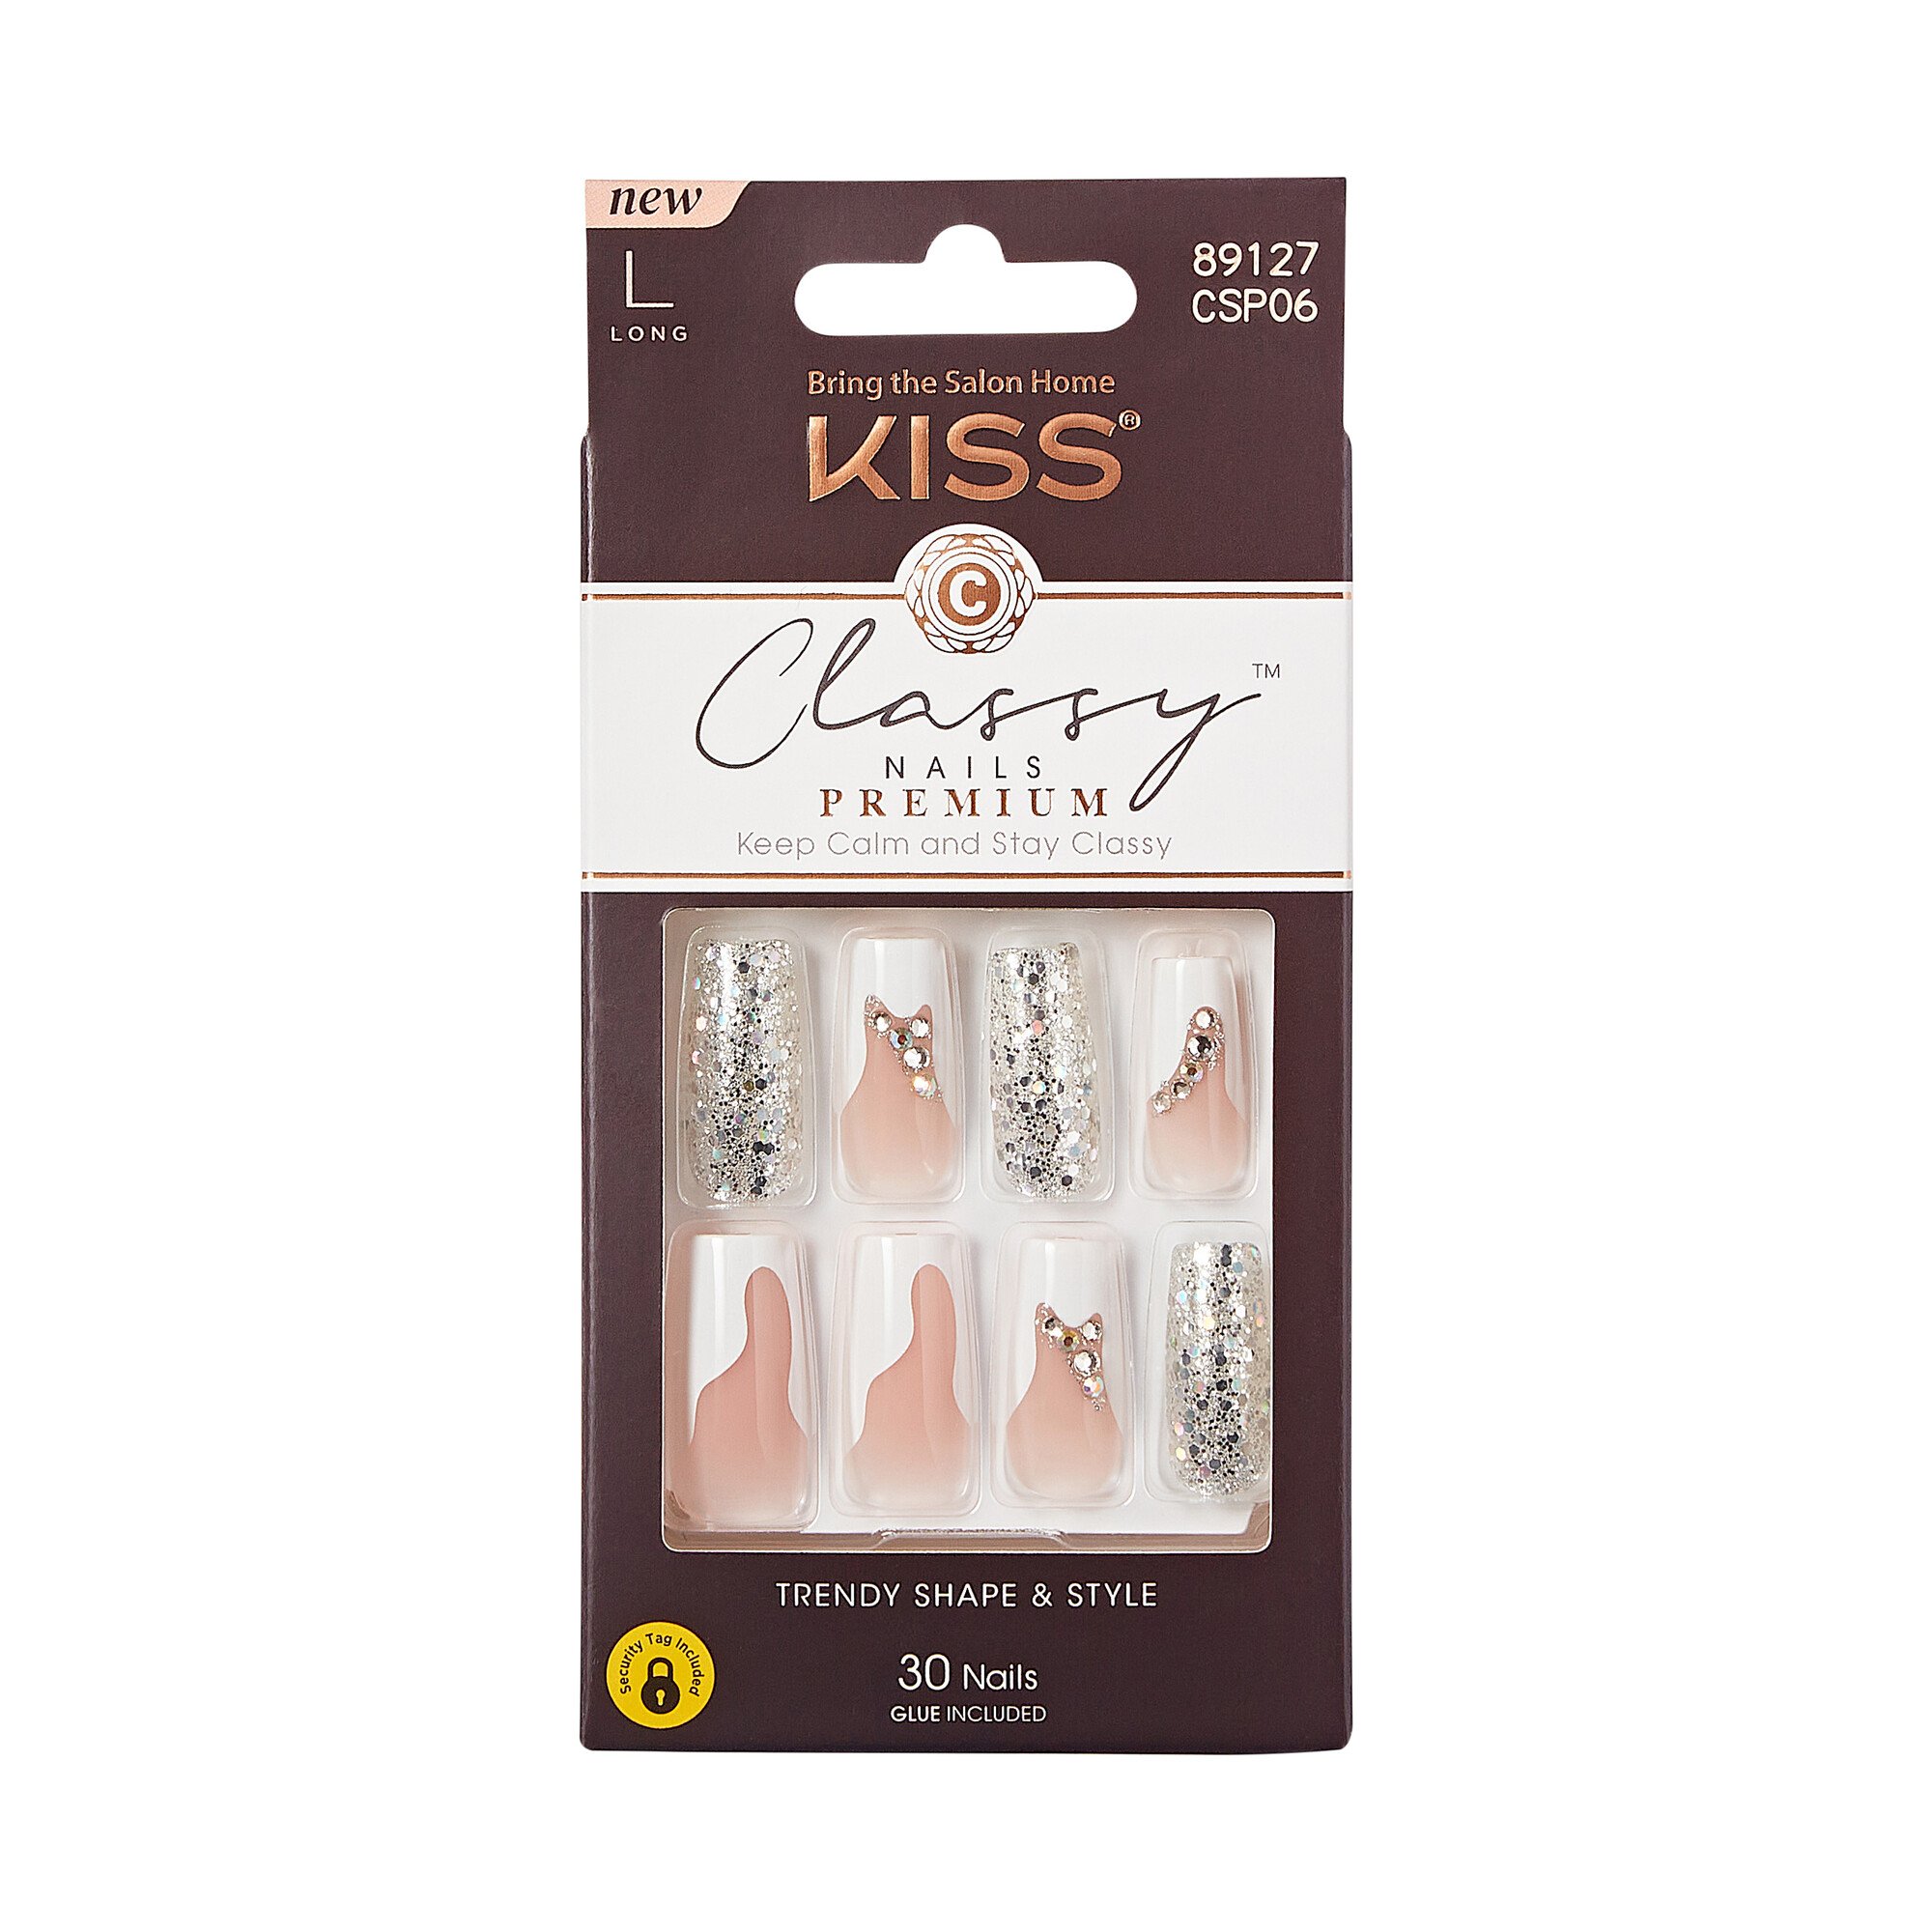 KISS Classy Premium Nails - Stay Modish - Shop Nail Sets at H-E-B